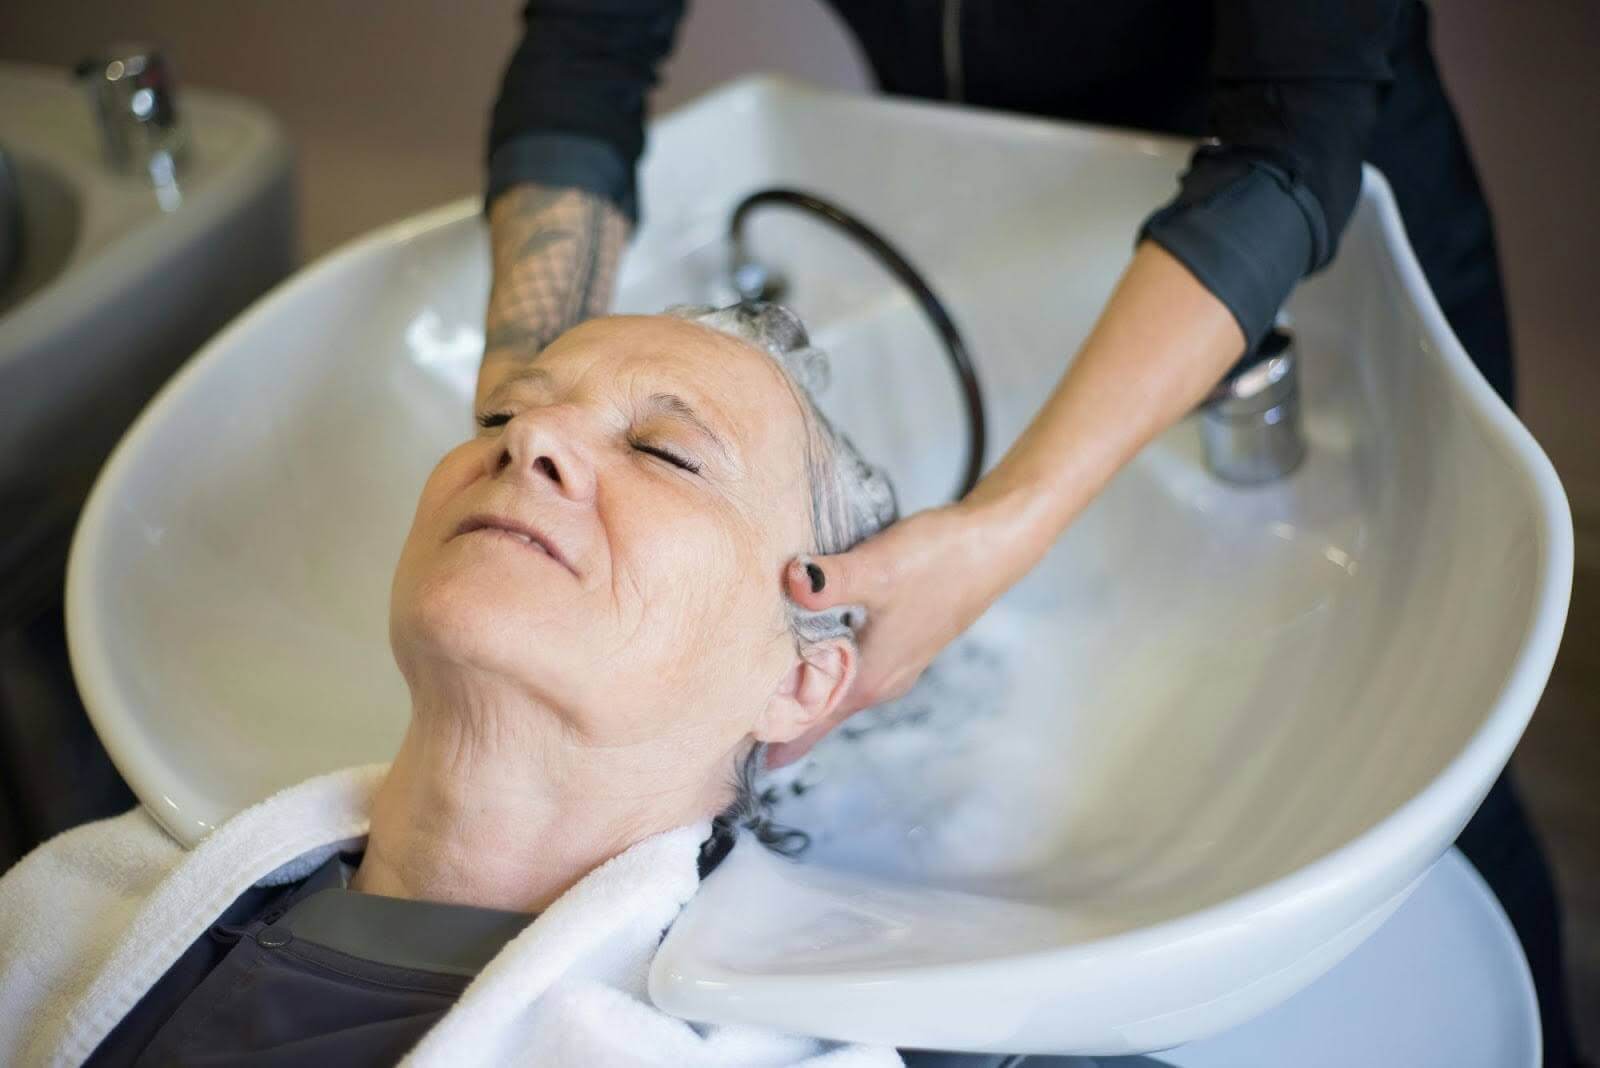 A woman getting her hair shampooed in a hair salon.